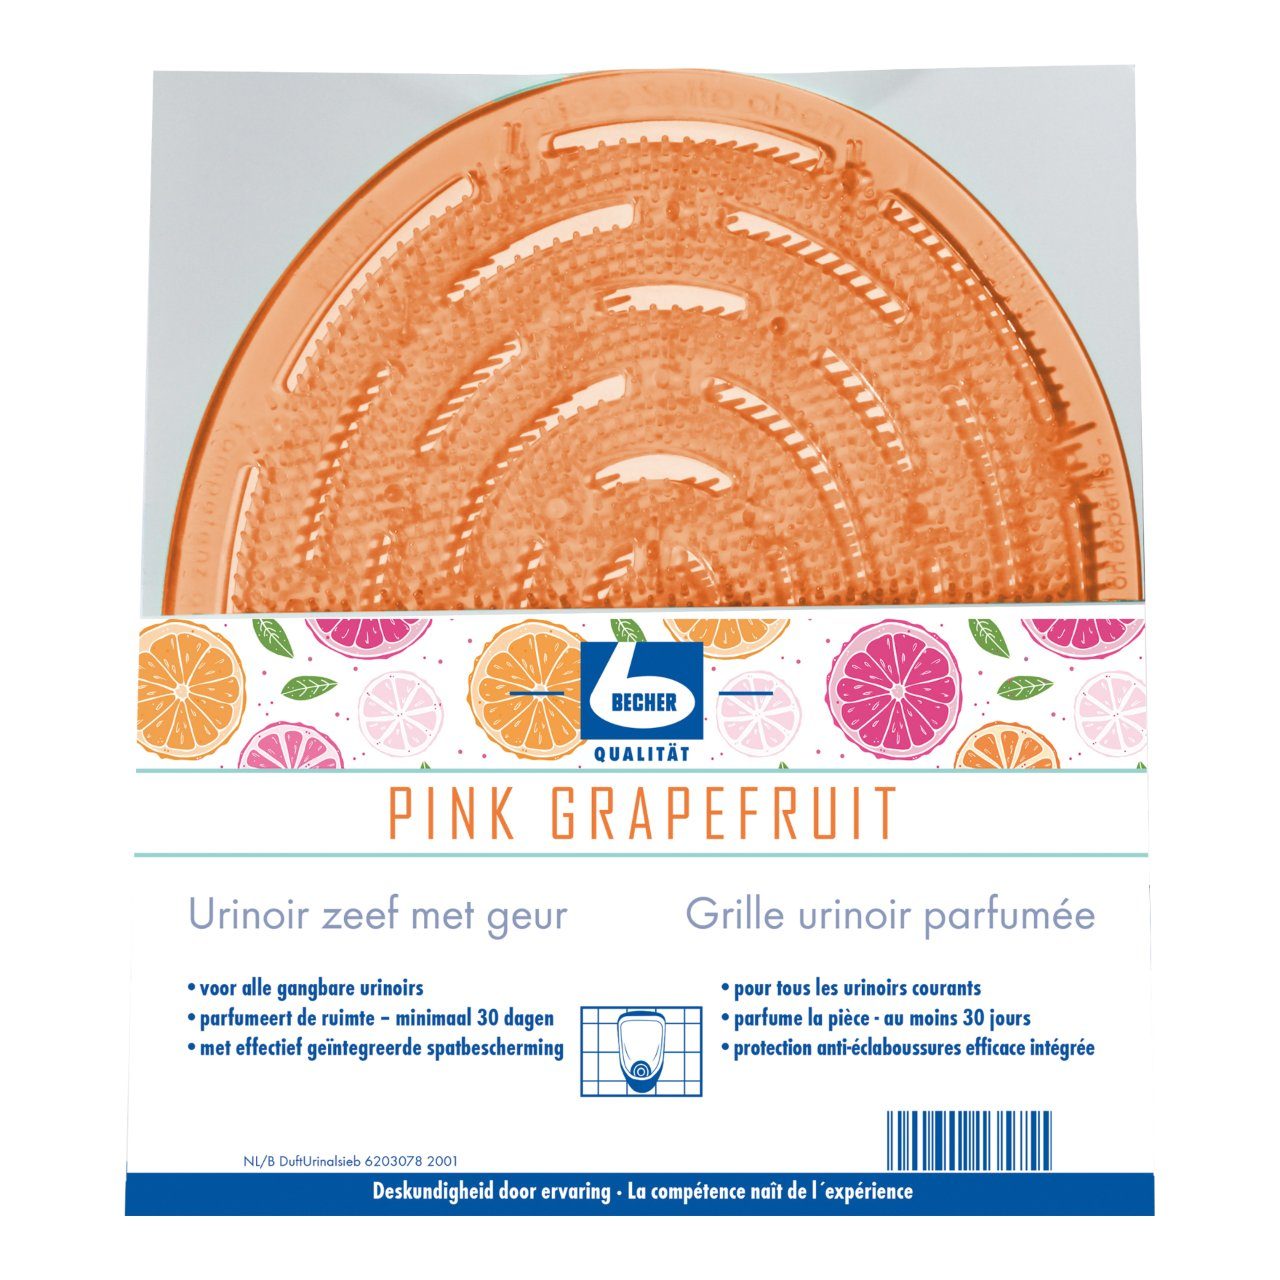 Urinoirzeef met geur pink grapefruit